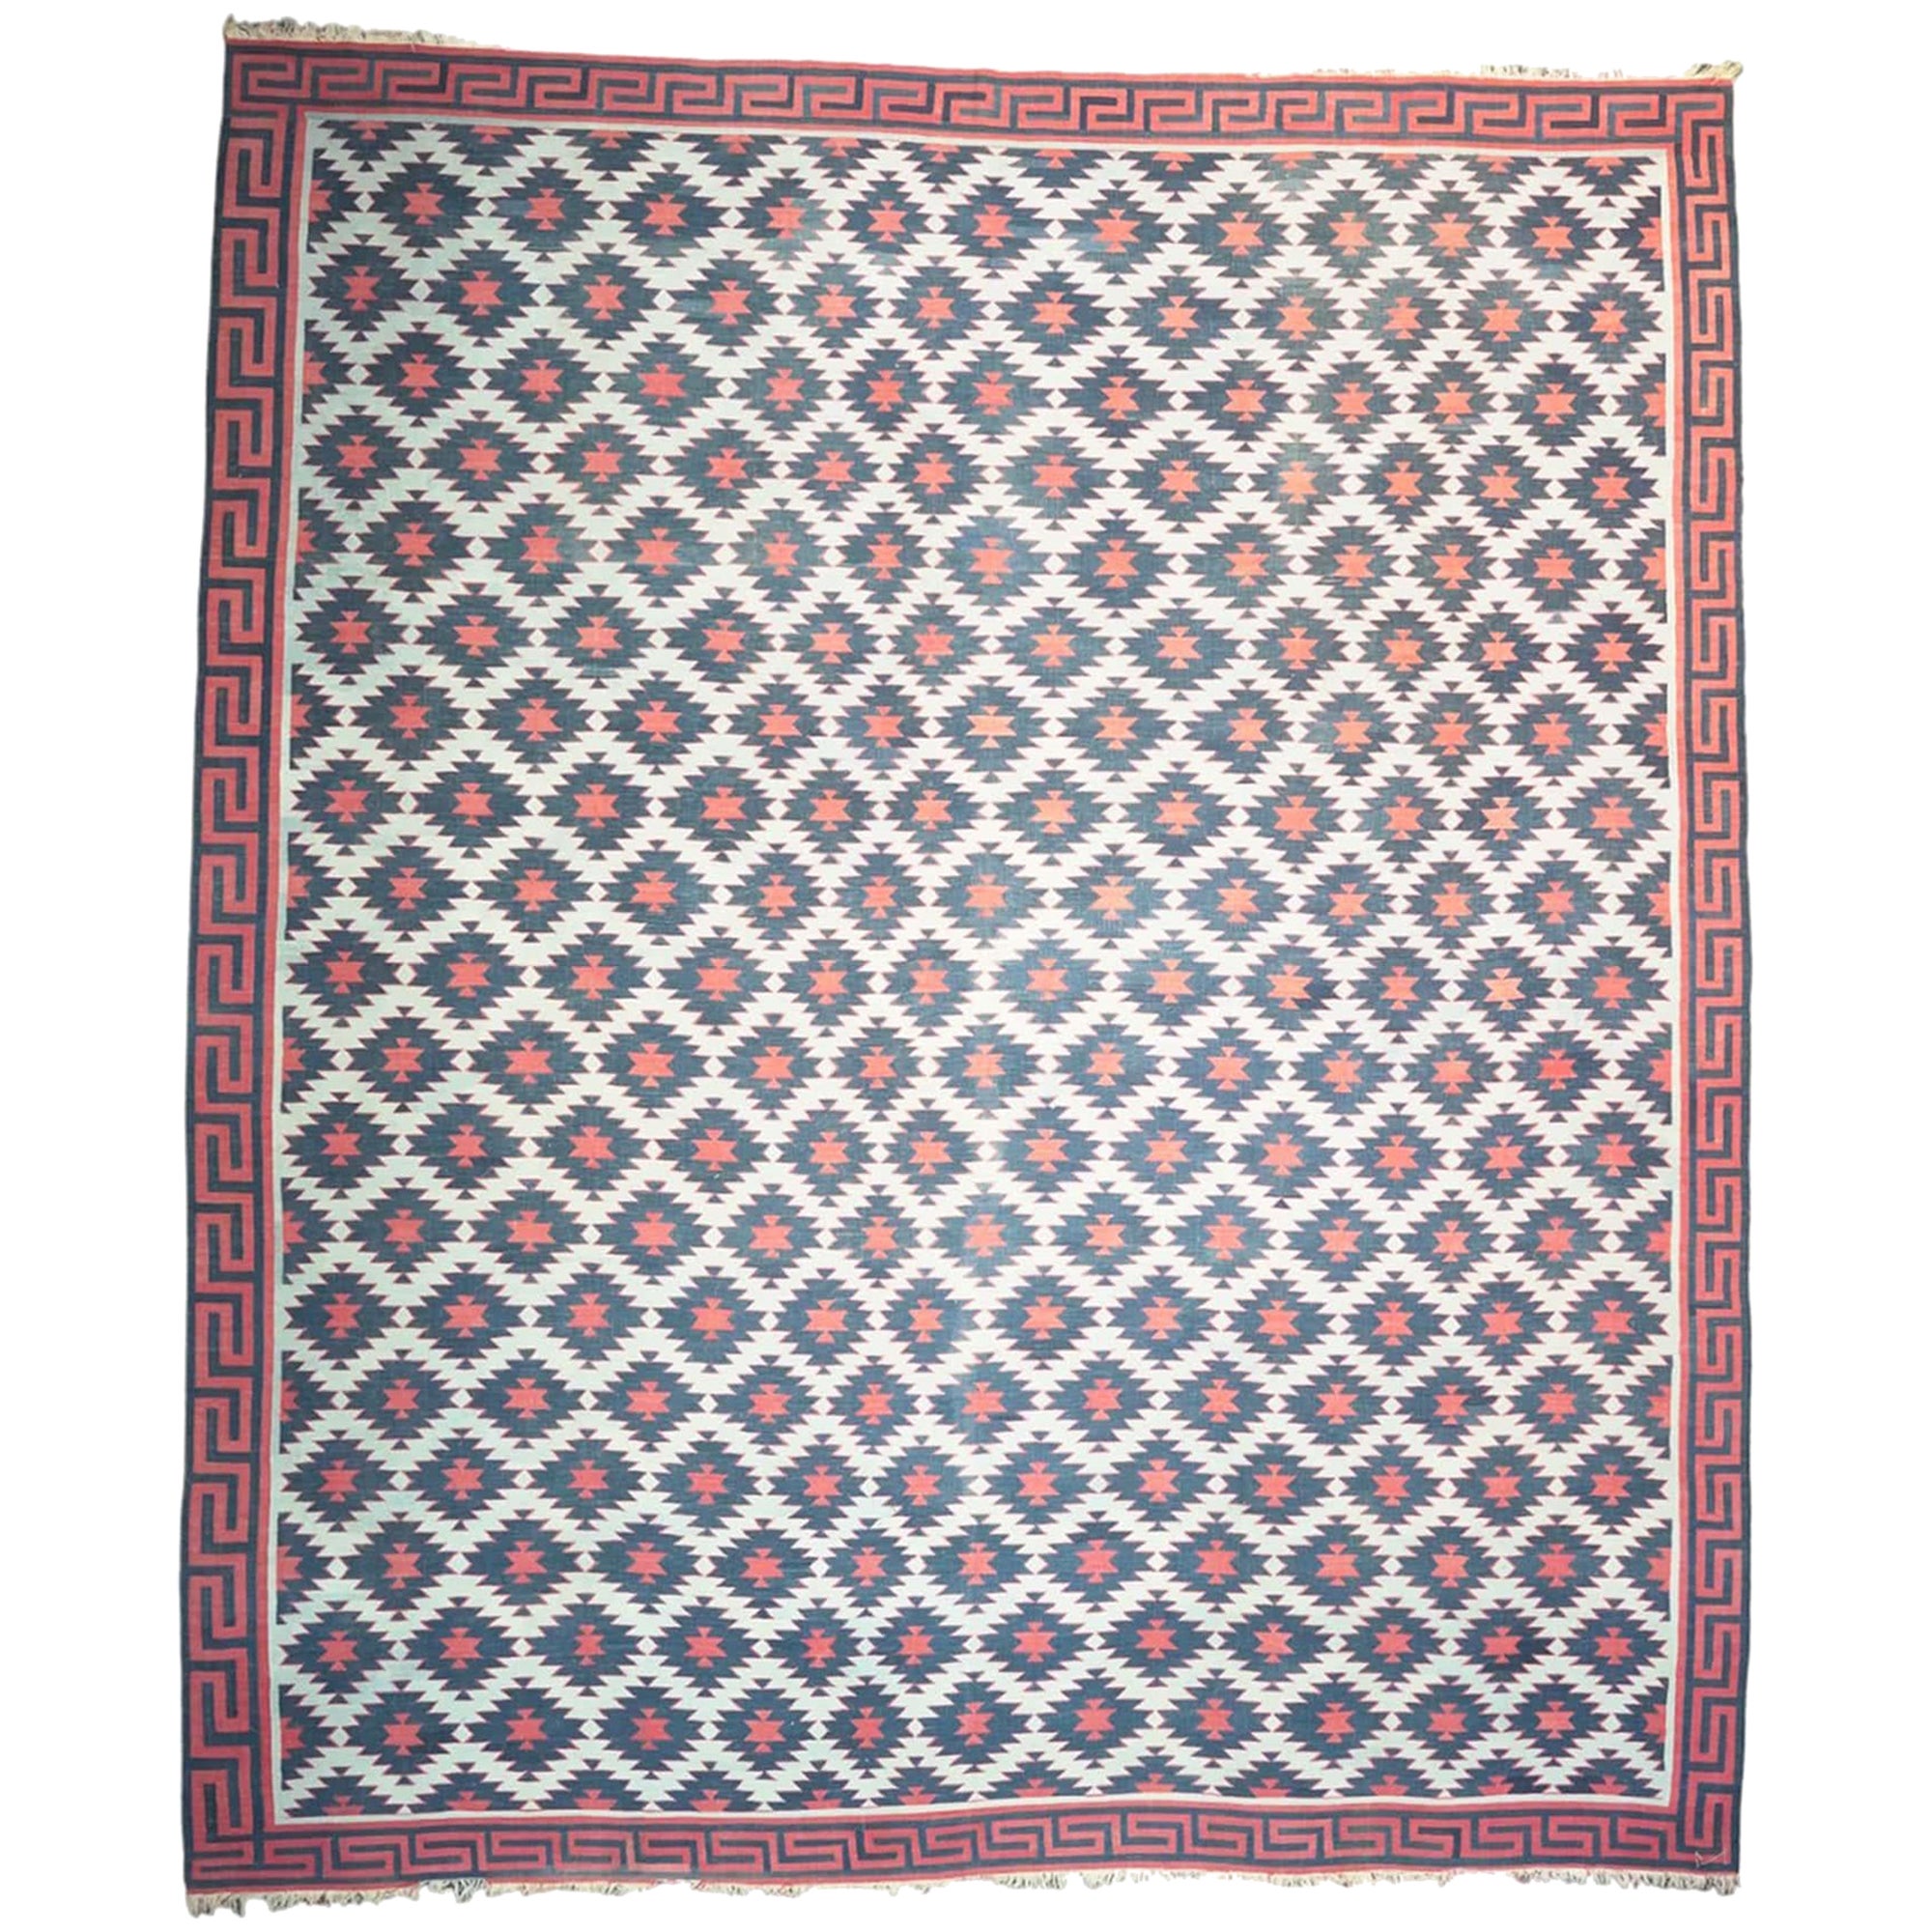 Geometrischer Dhurrie Vintage-Teppich in Rosa und Blau, von Rug & Kilim, Vintage